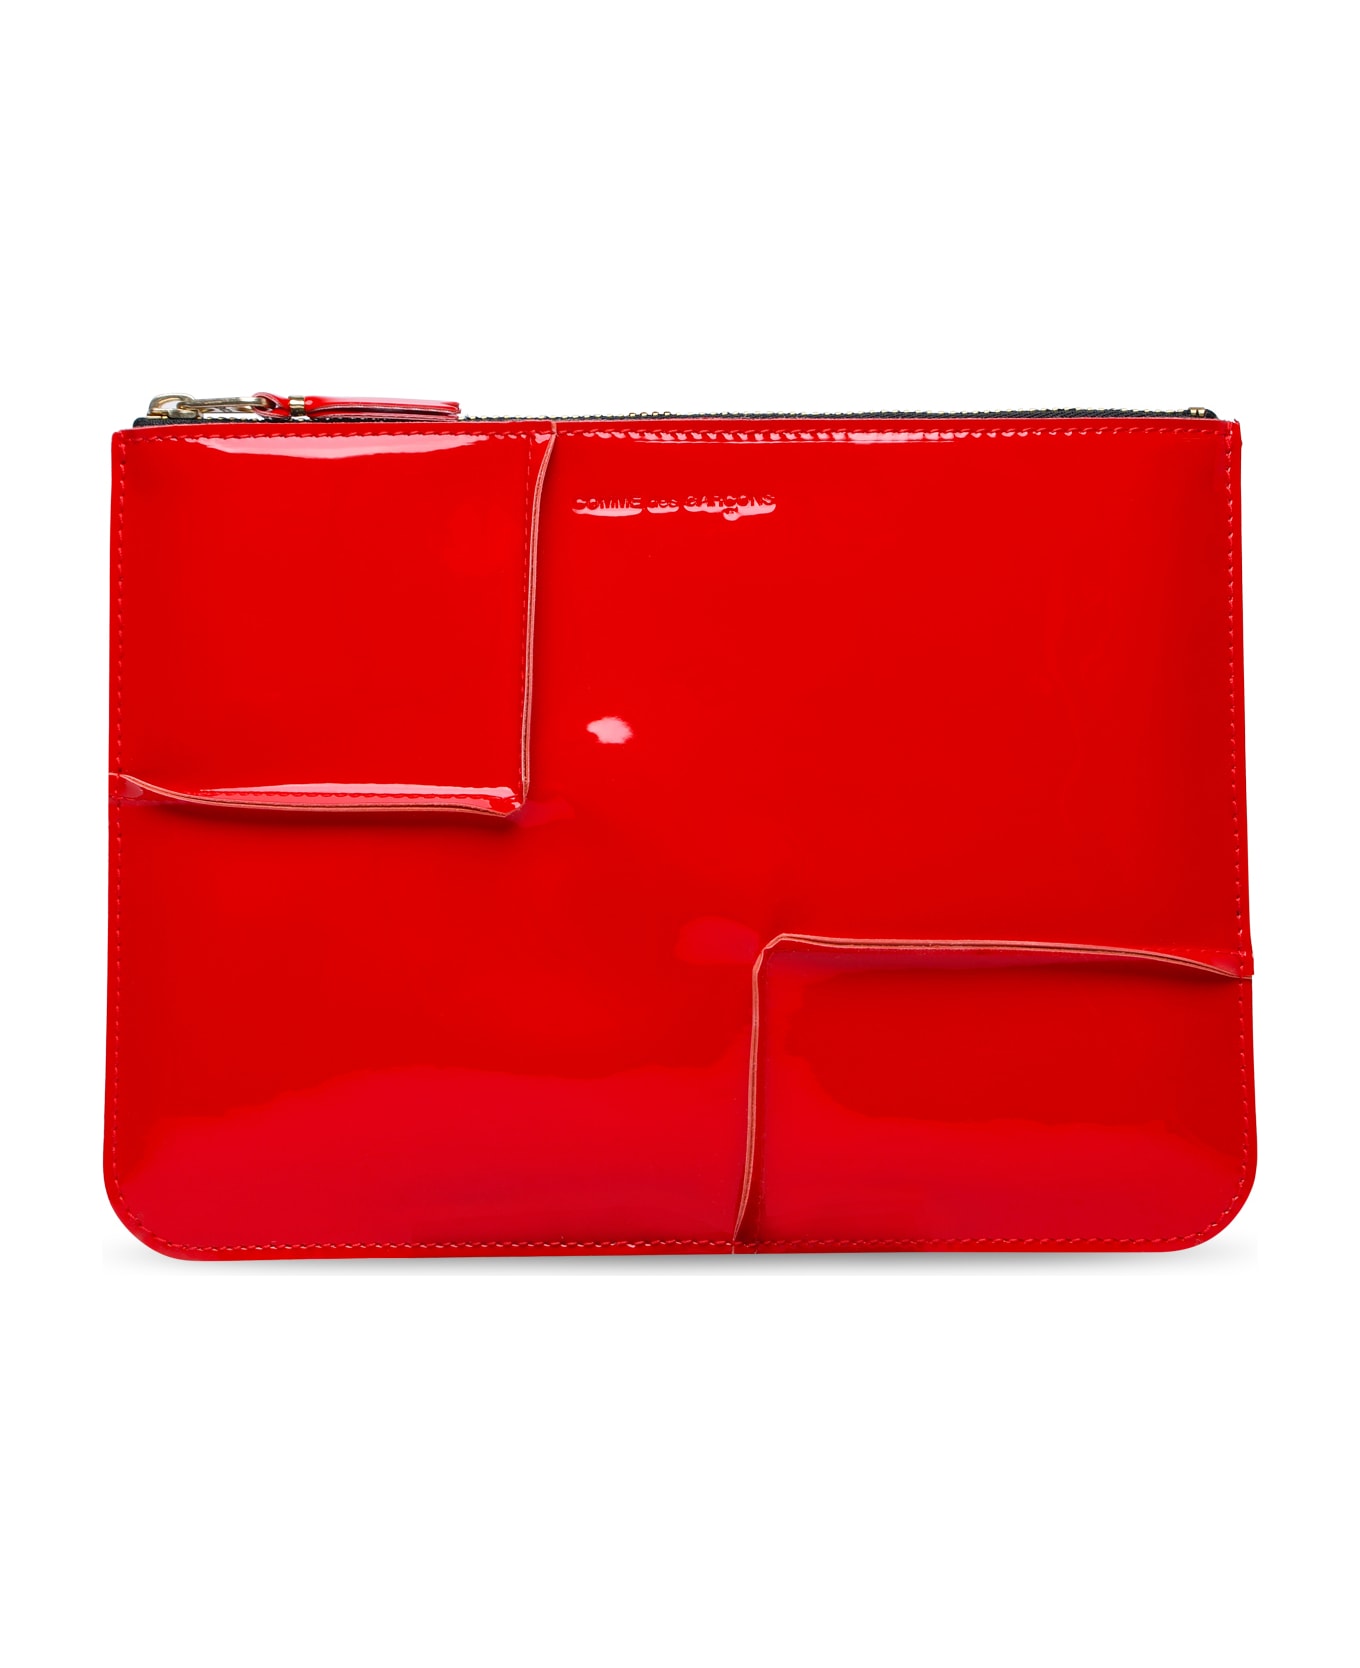 Comme des Garçons Wallet 'medley' Red Leather Envelope - Red